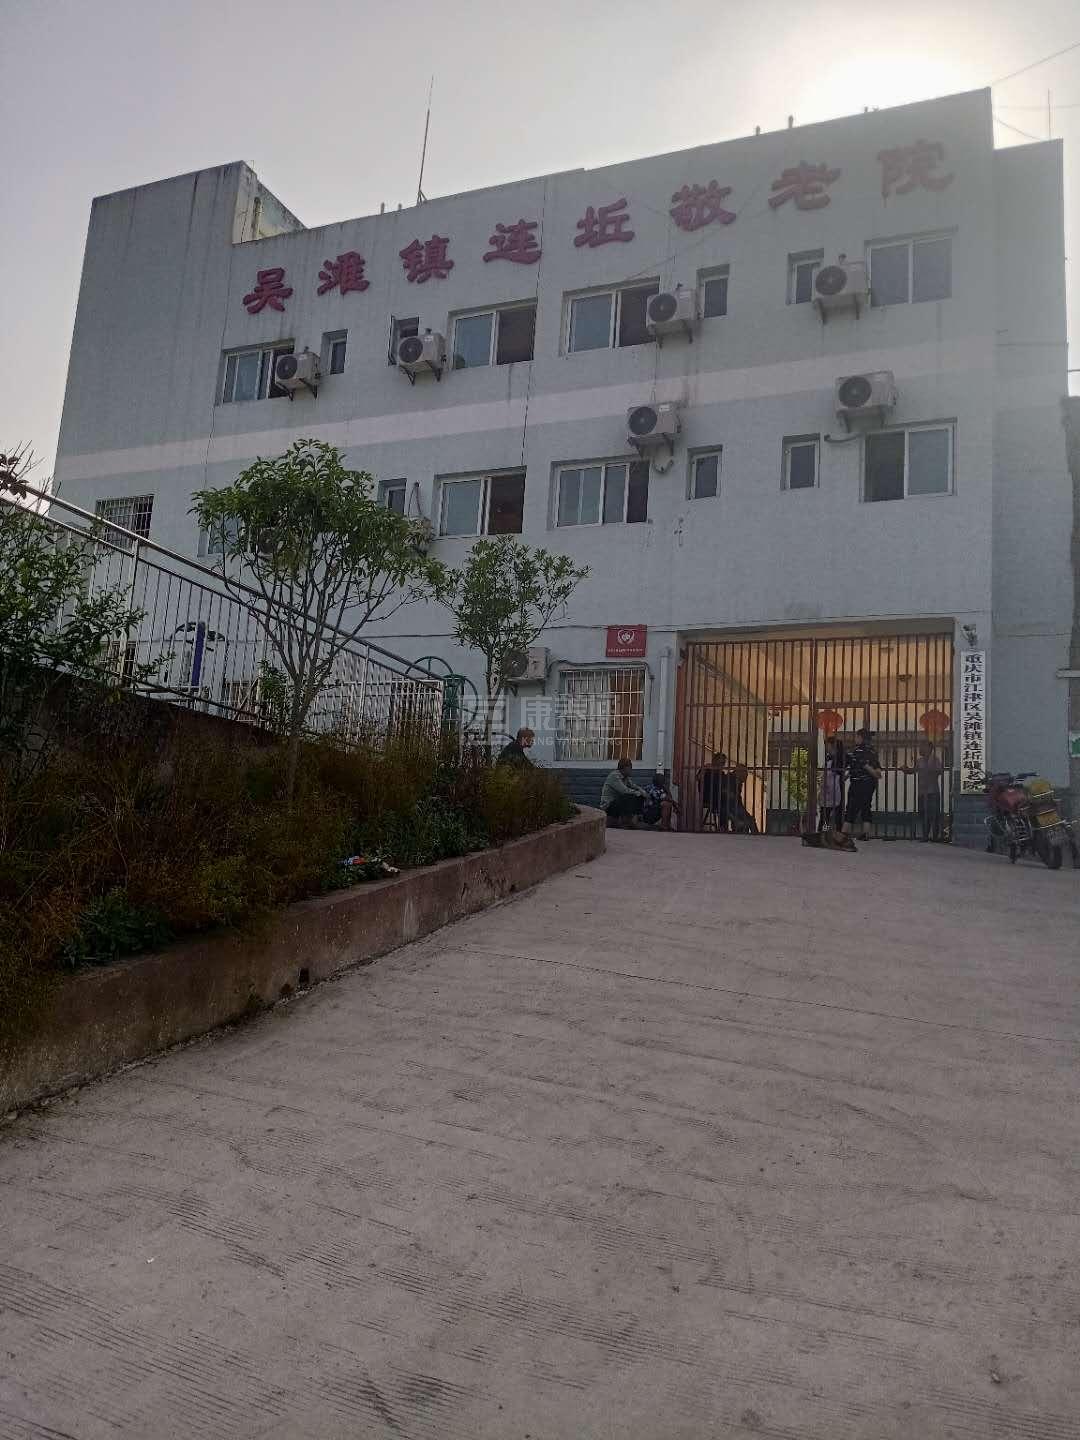 重庆市江津区吴滩镇连坵敬老院服务项目图4让长者主动而自立地生活